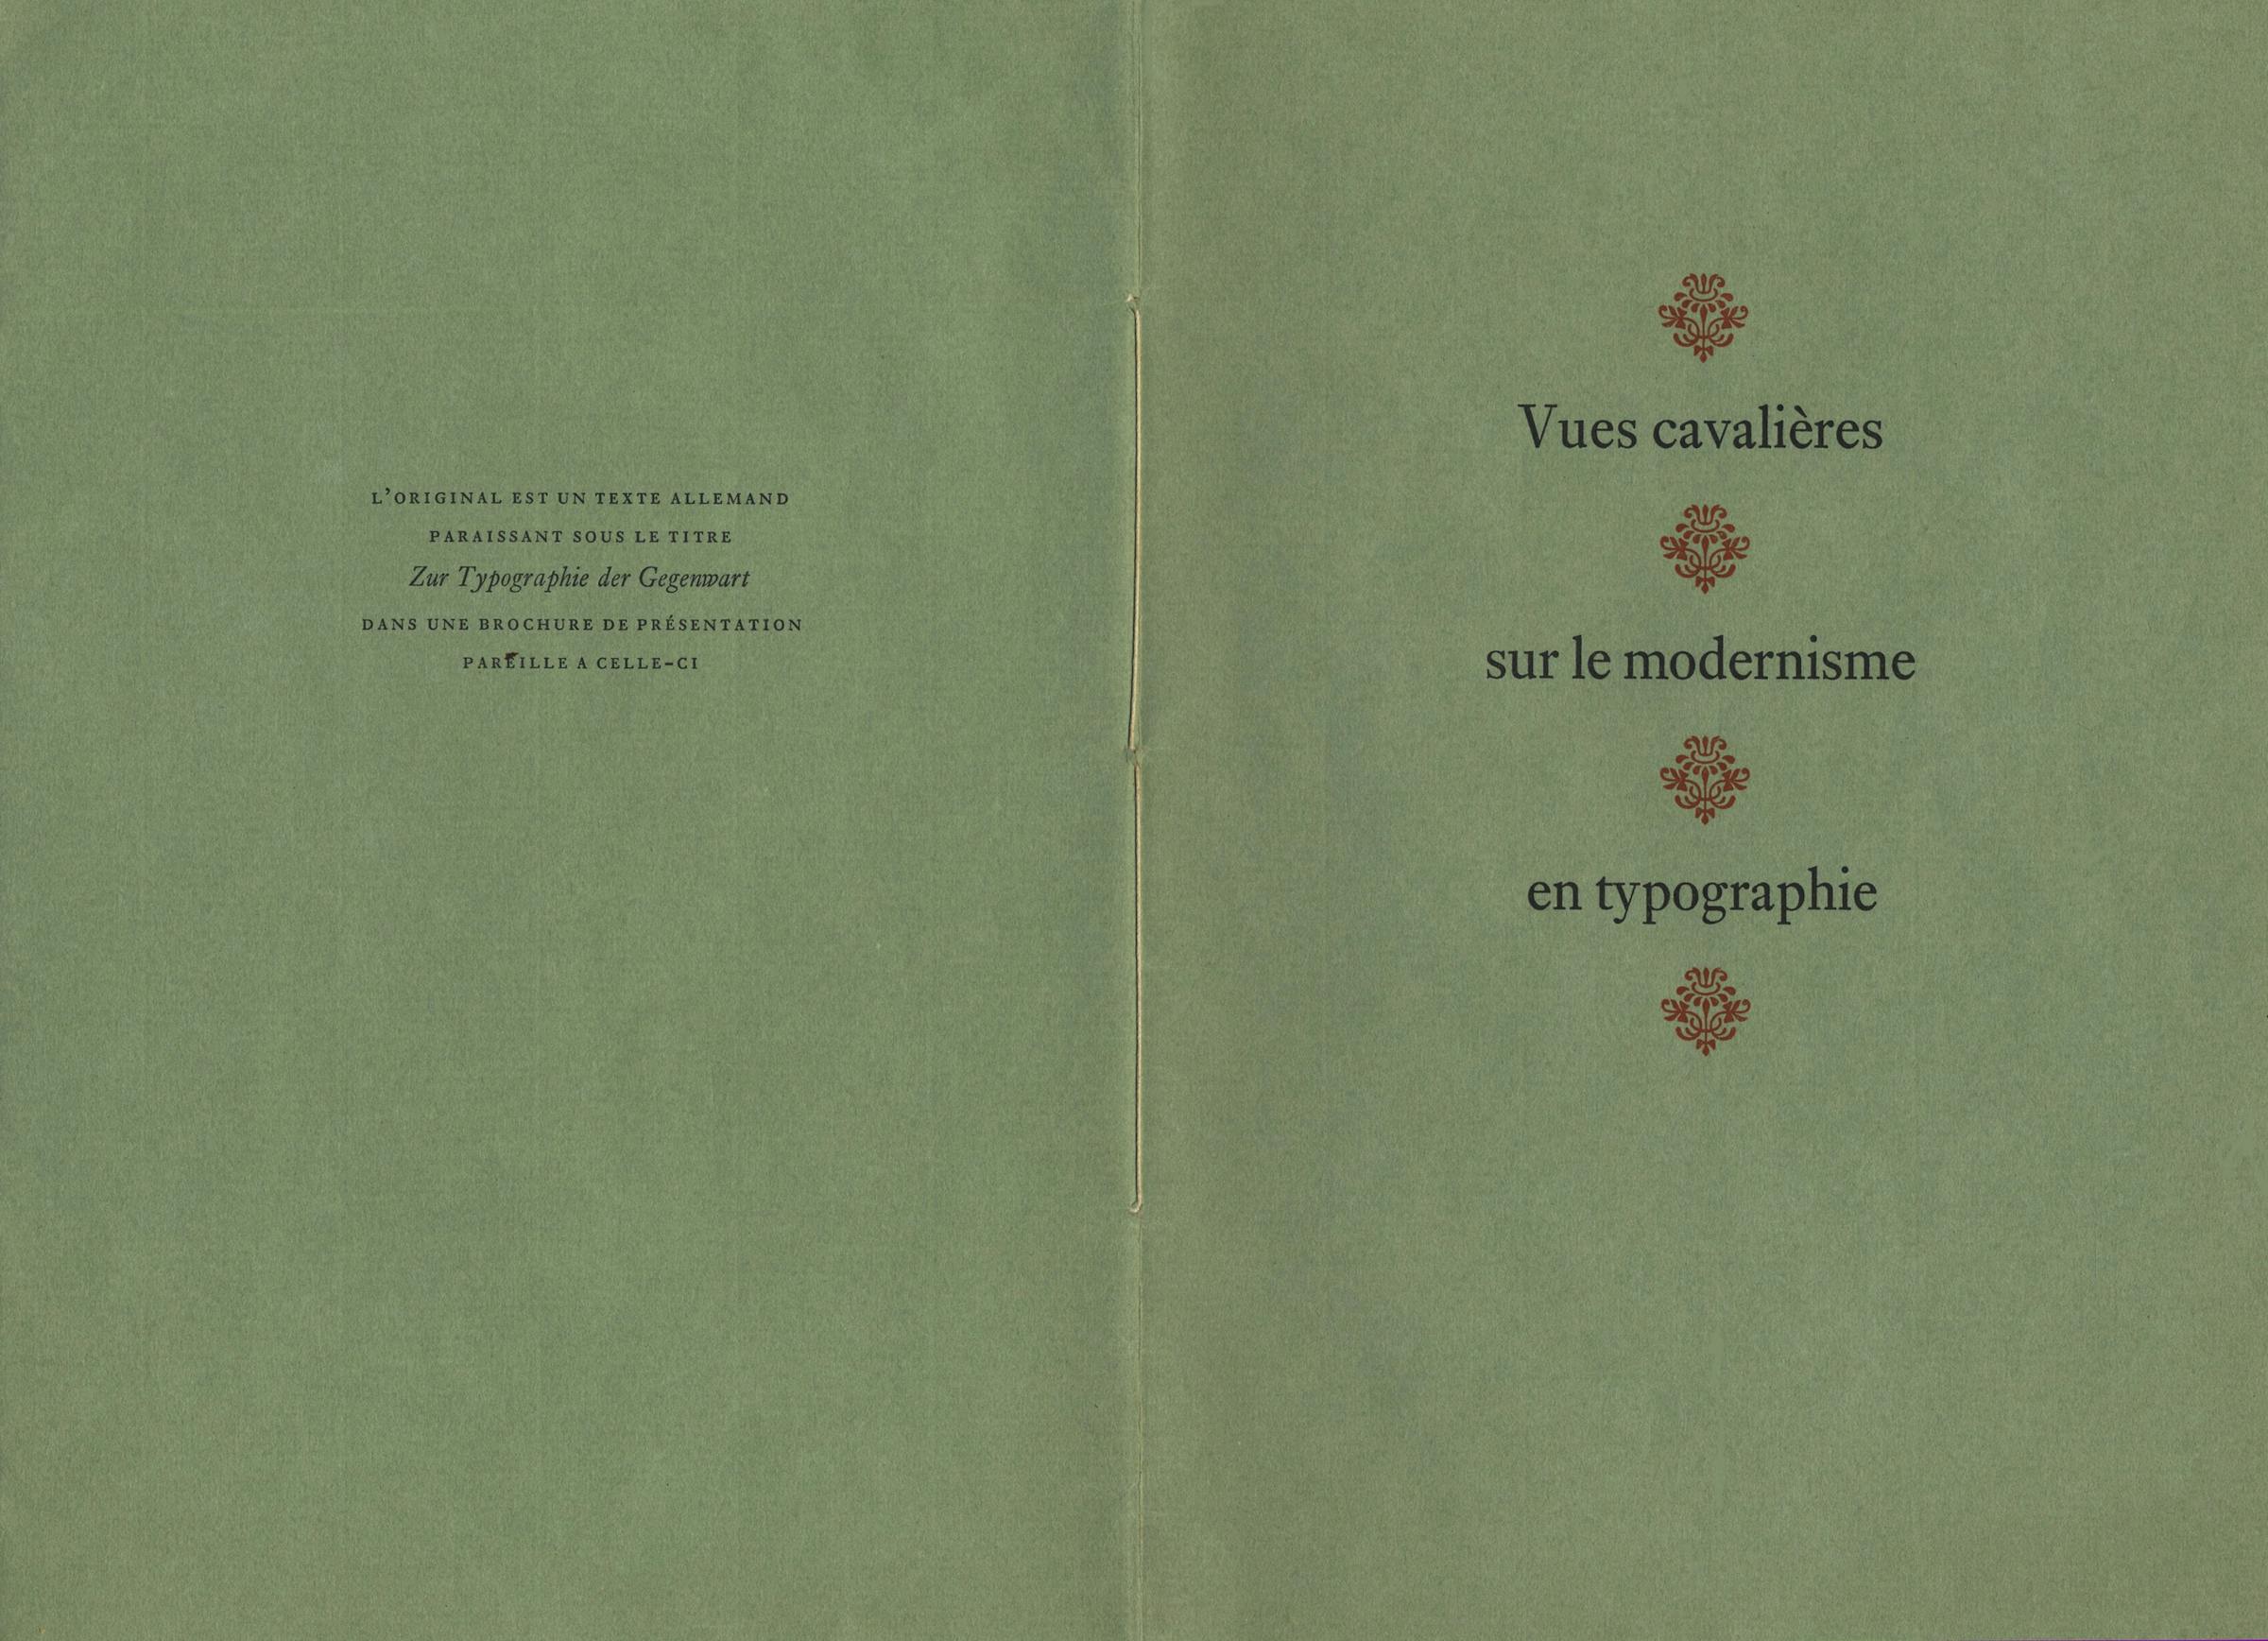 Jan Tschichold, “Vues cavalières sur le modernisme en typographie”